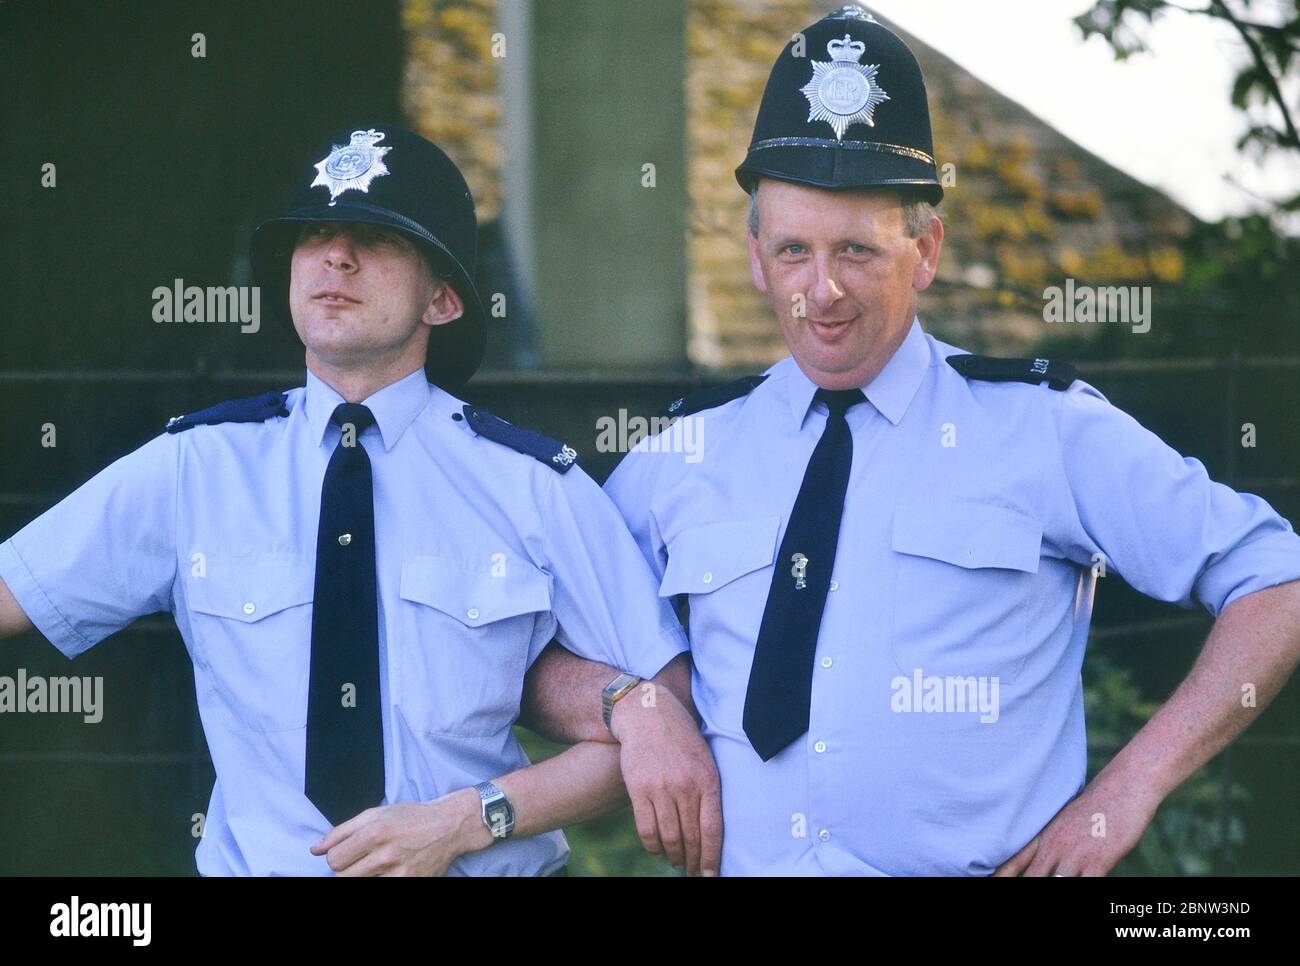 Due costabili di polizia maschile che si propongono per una risata con caschi custoditi di dimensioni sbagliate. Inghilterra, Regno Unito. Circa anni 80 Foto Stock